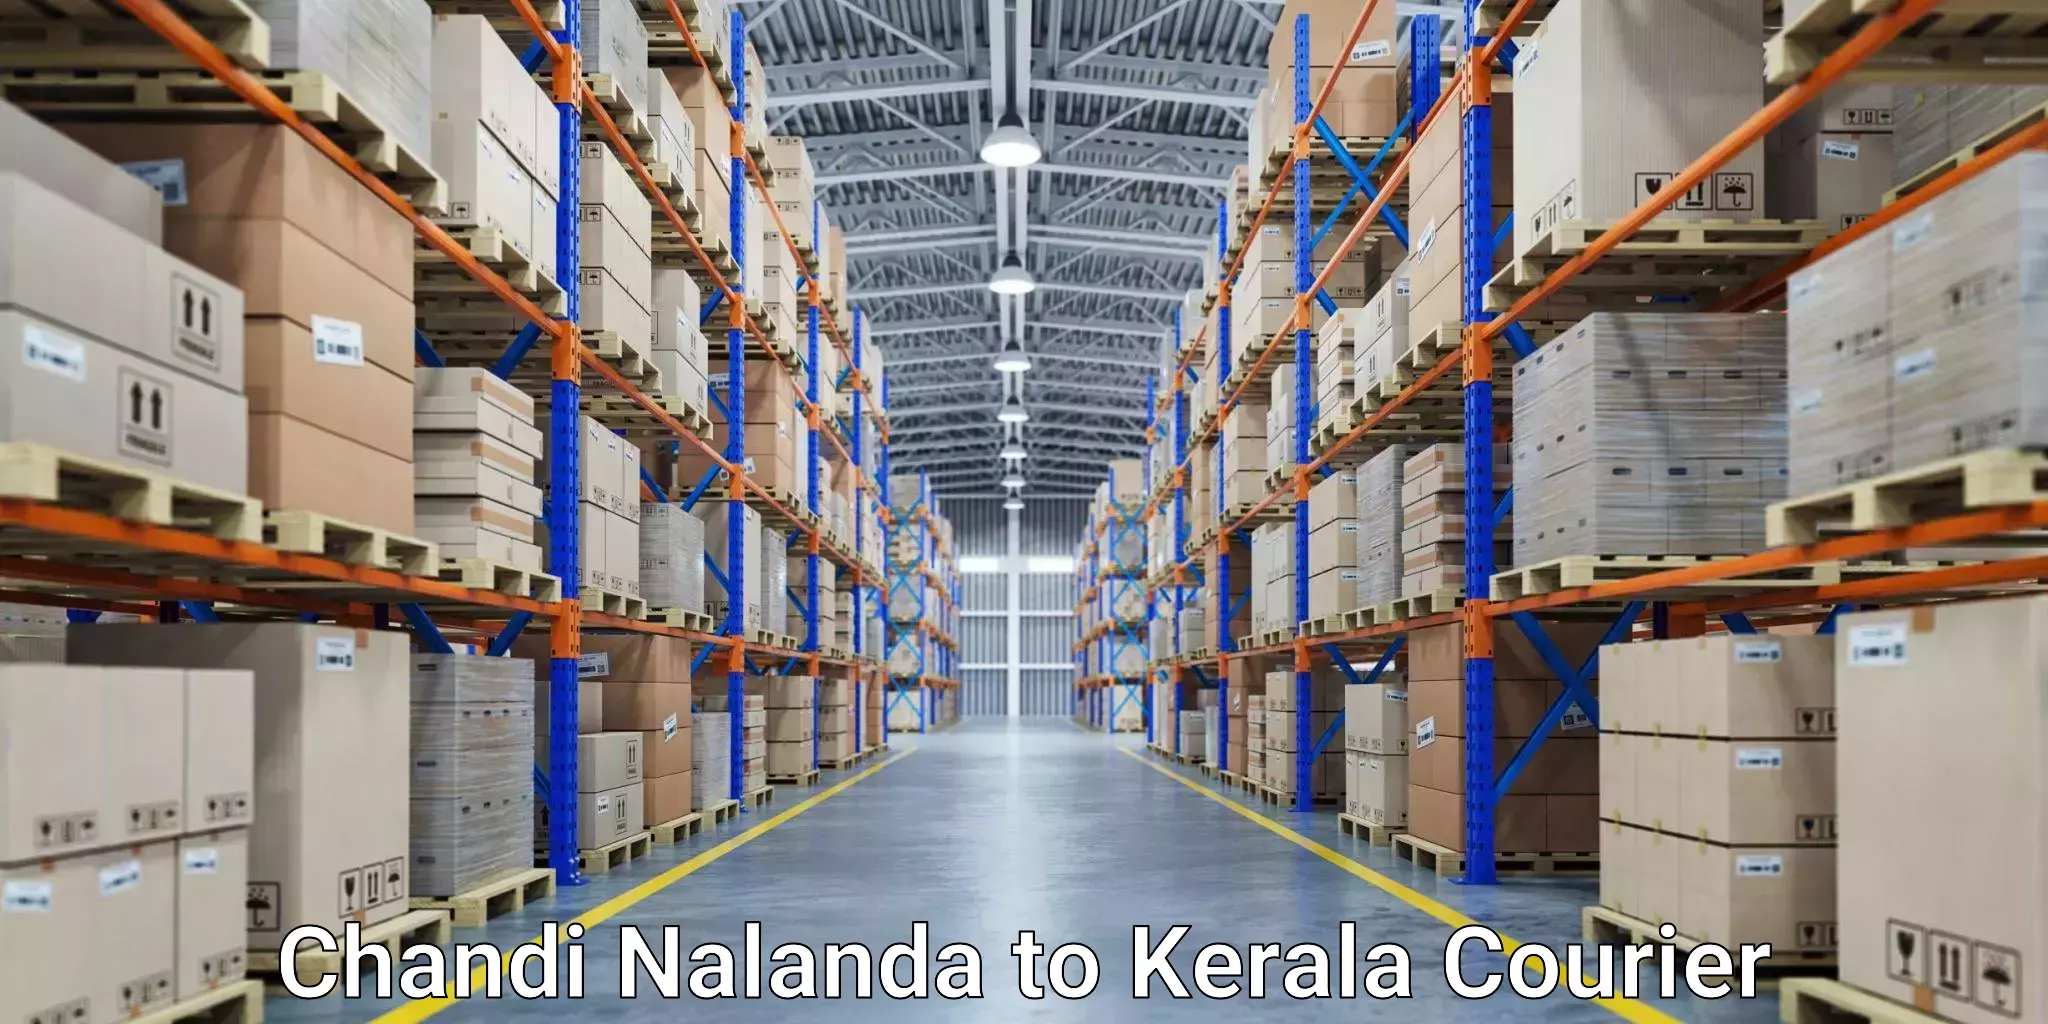 Express delivery capabilities Chandi Nalanda to Aluva